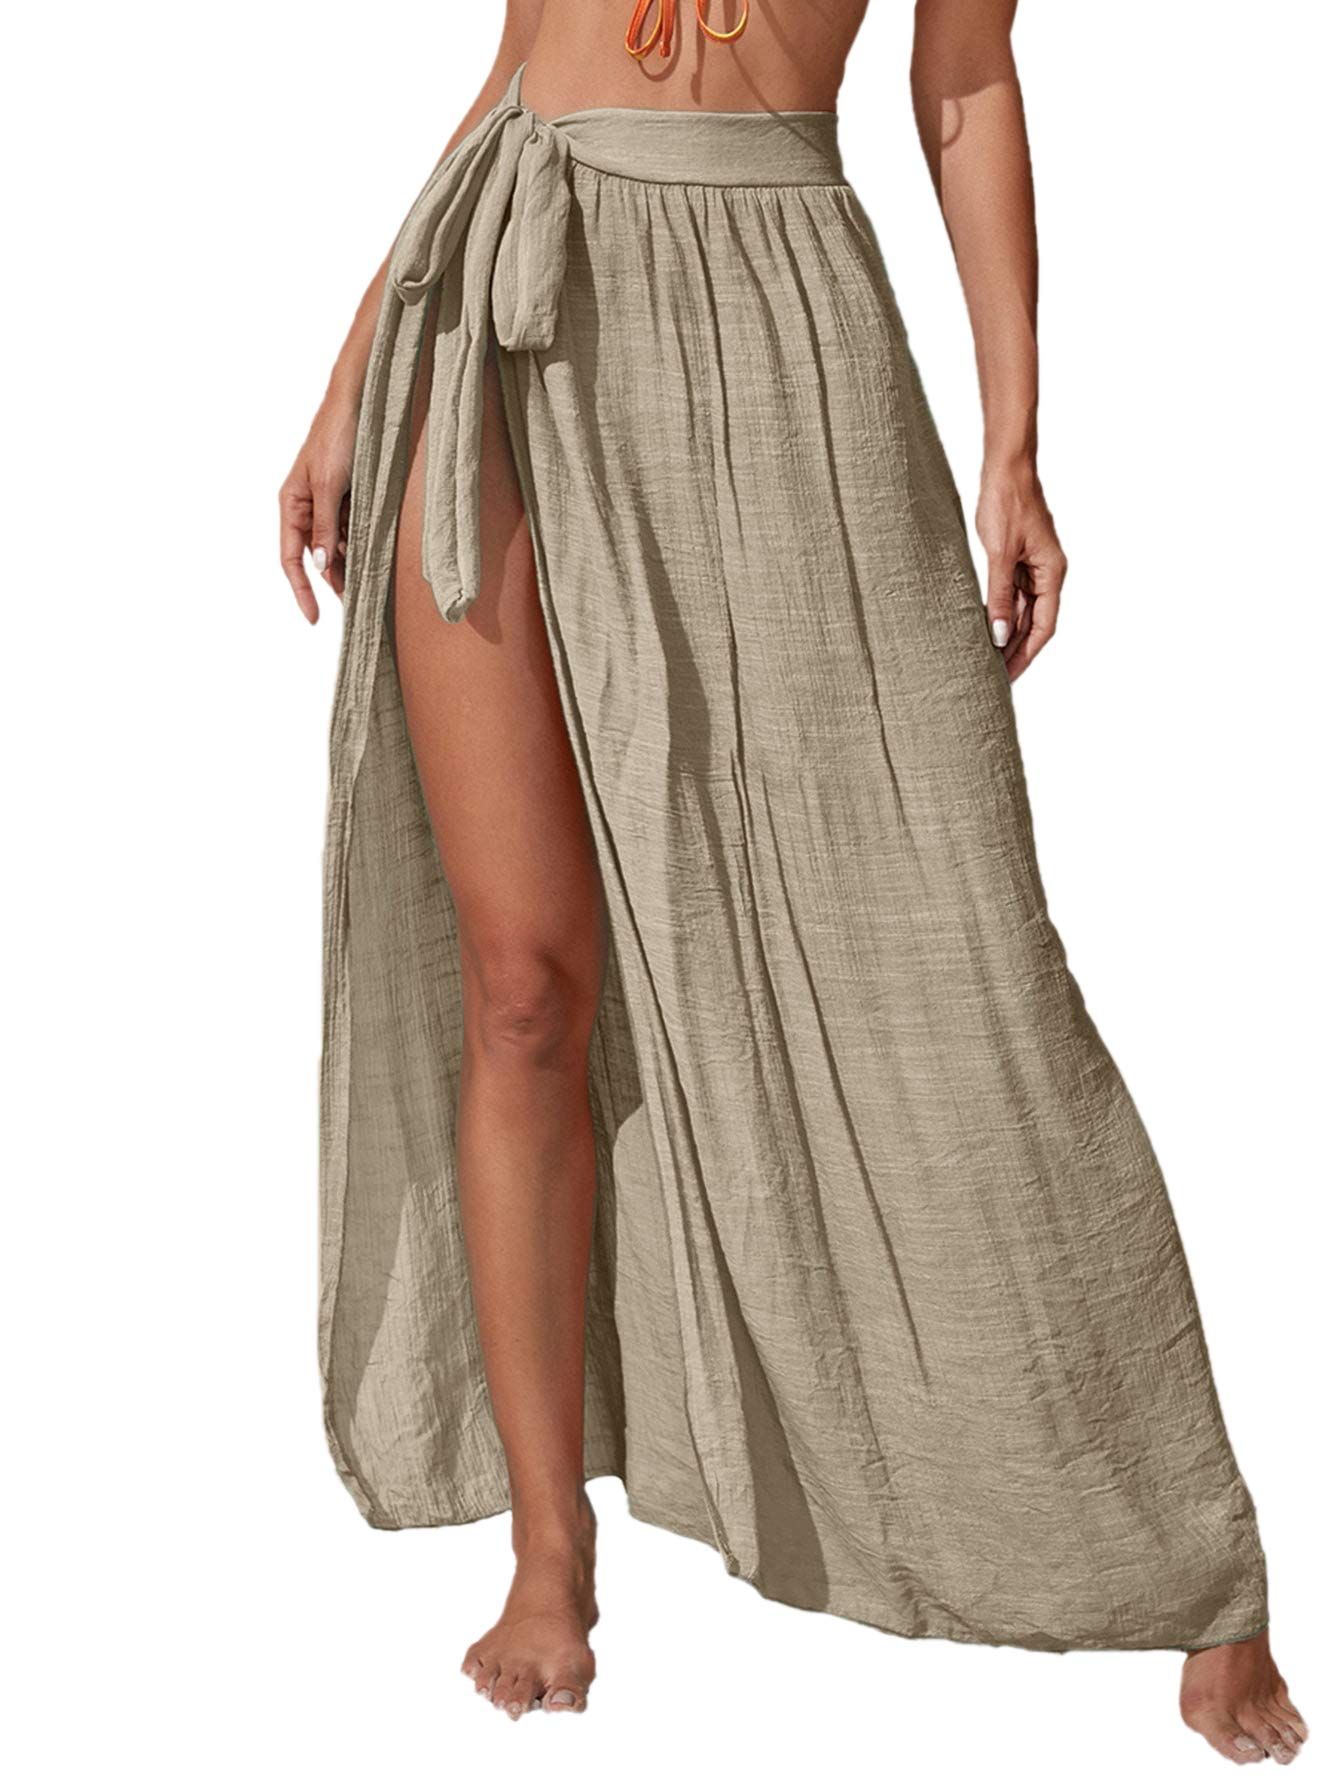 Floerns Women's Sheer Beach Swimwear Cover Up Wrap Skirt | Amazon (US)